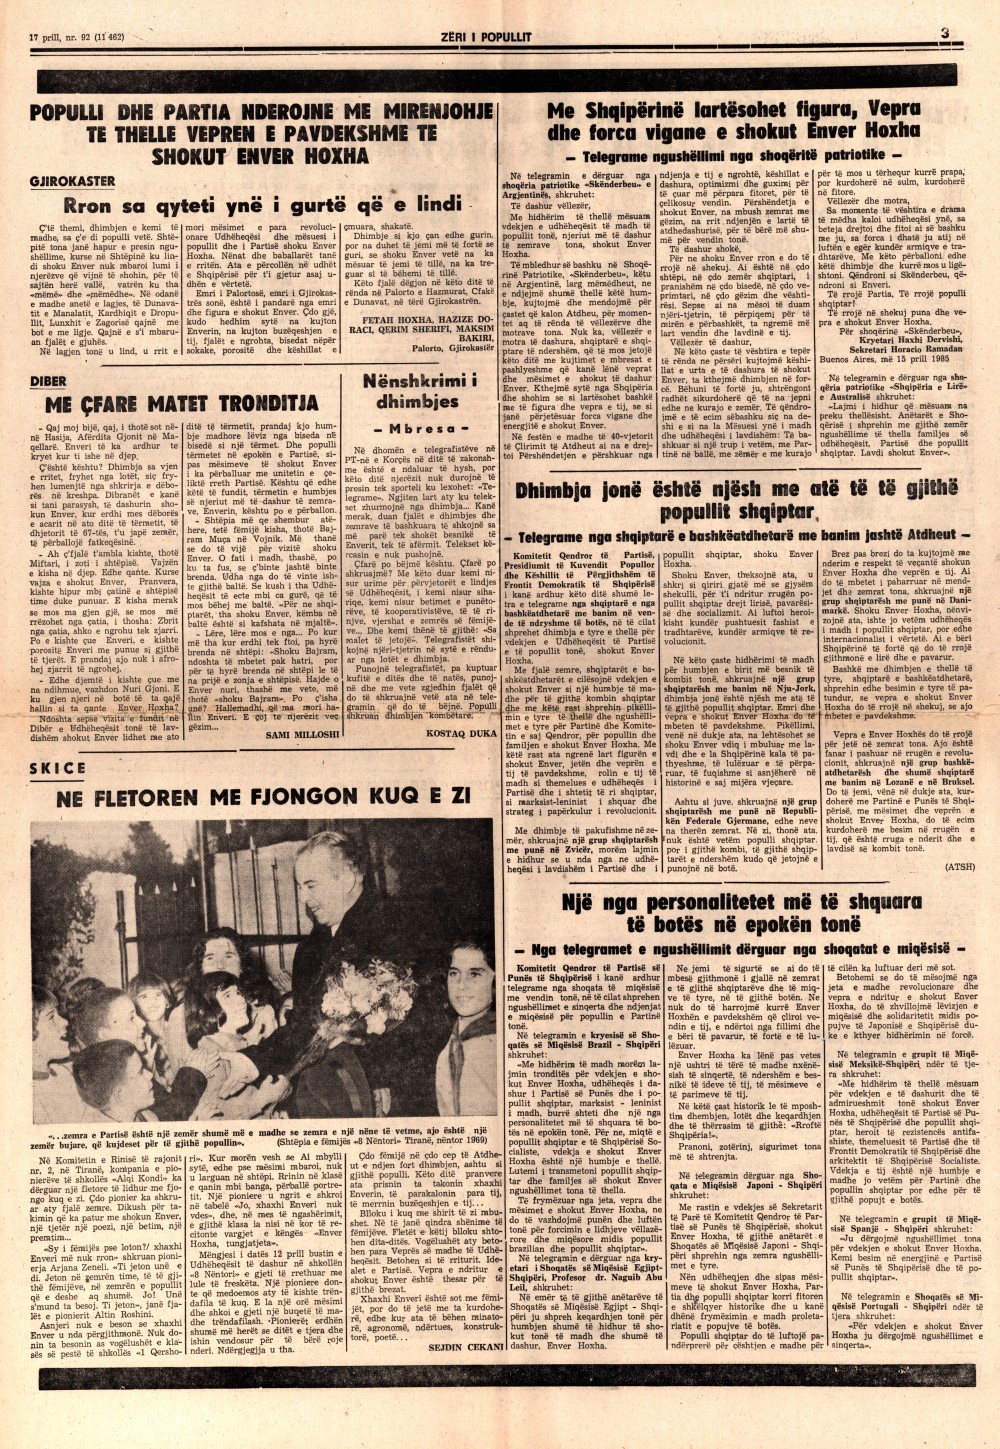 Газета "Зери и популлит" от 17 апреля 1985 года (третья полоса)